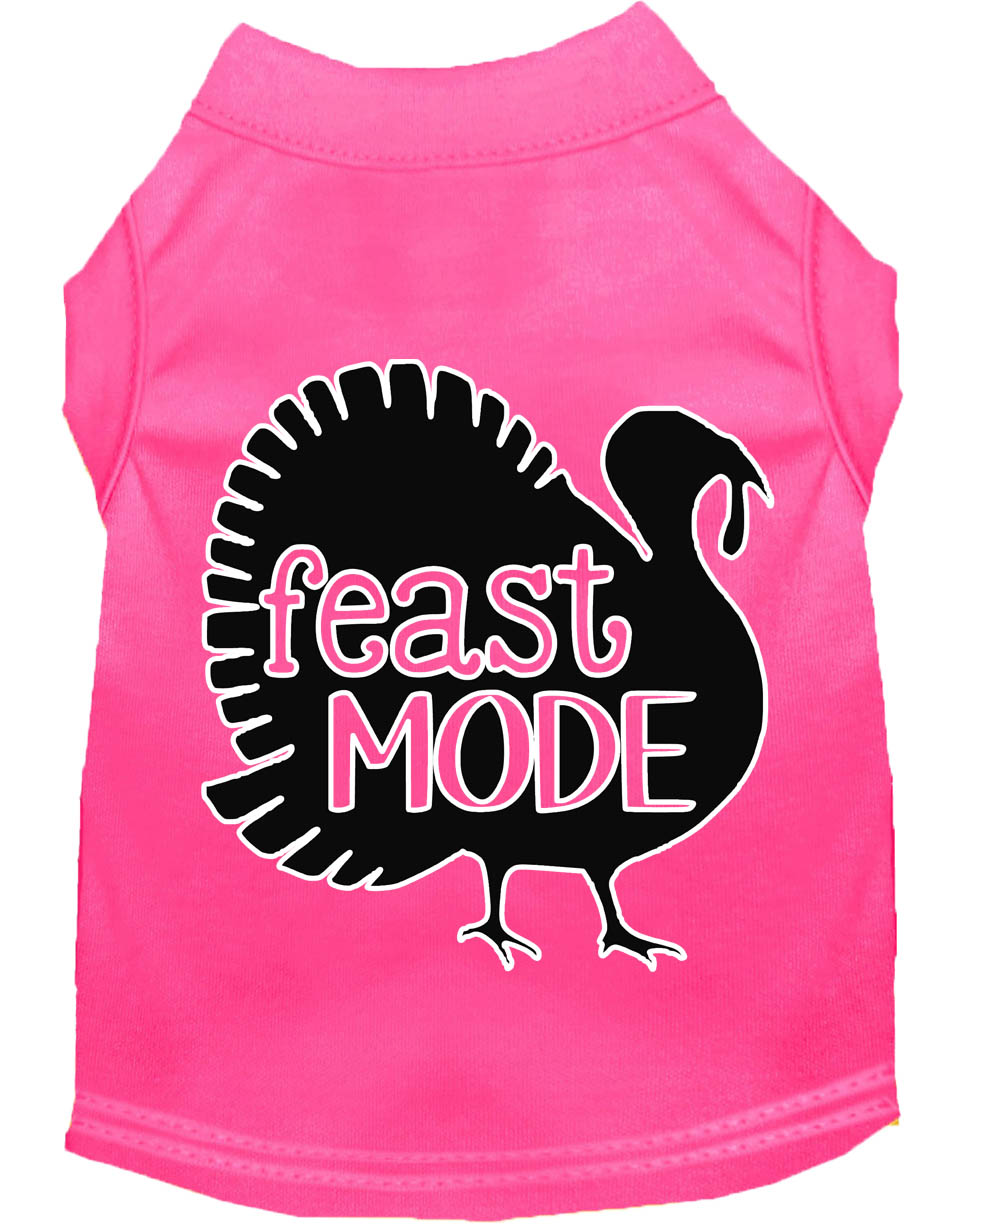 Feast Mode Screen Print Dog Shirt Bright Pink XXXL